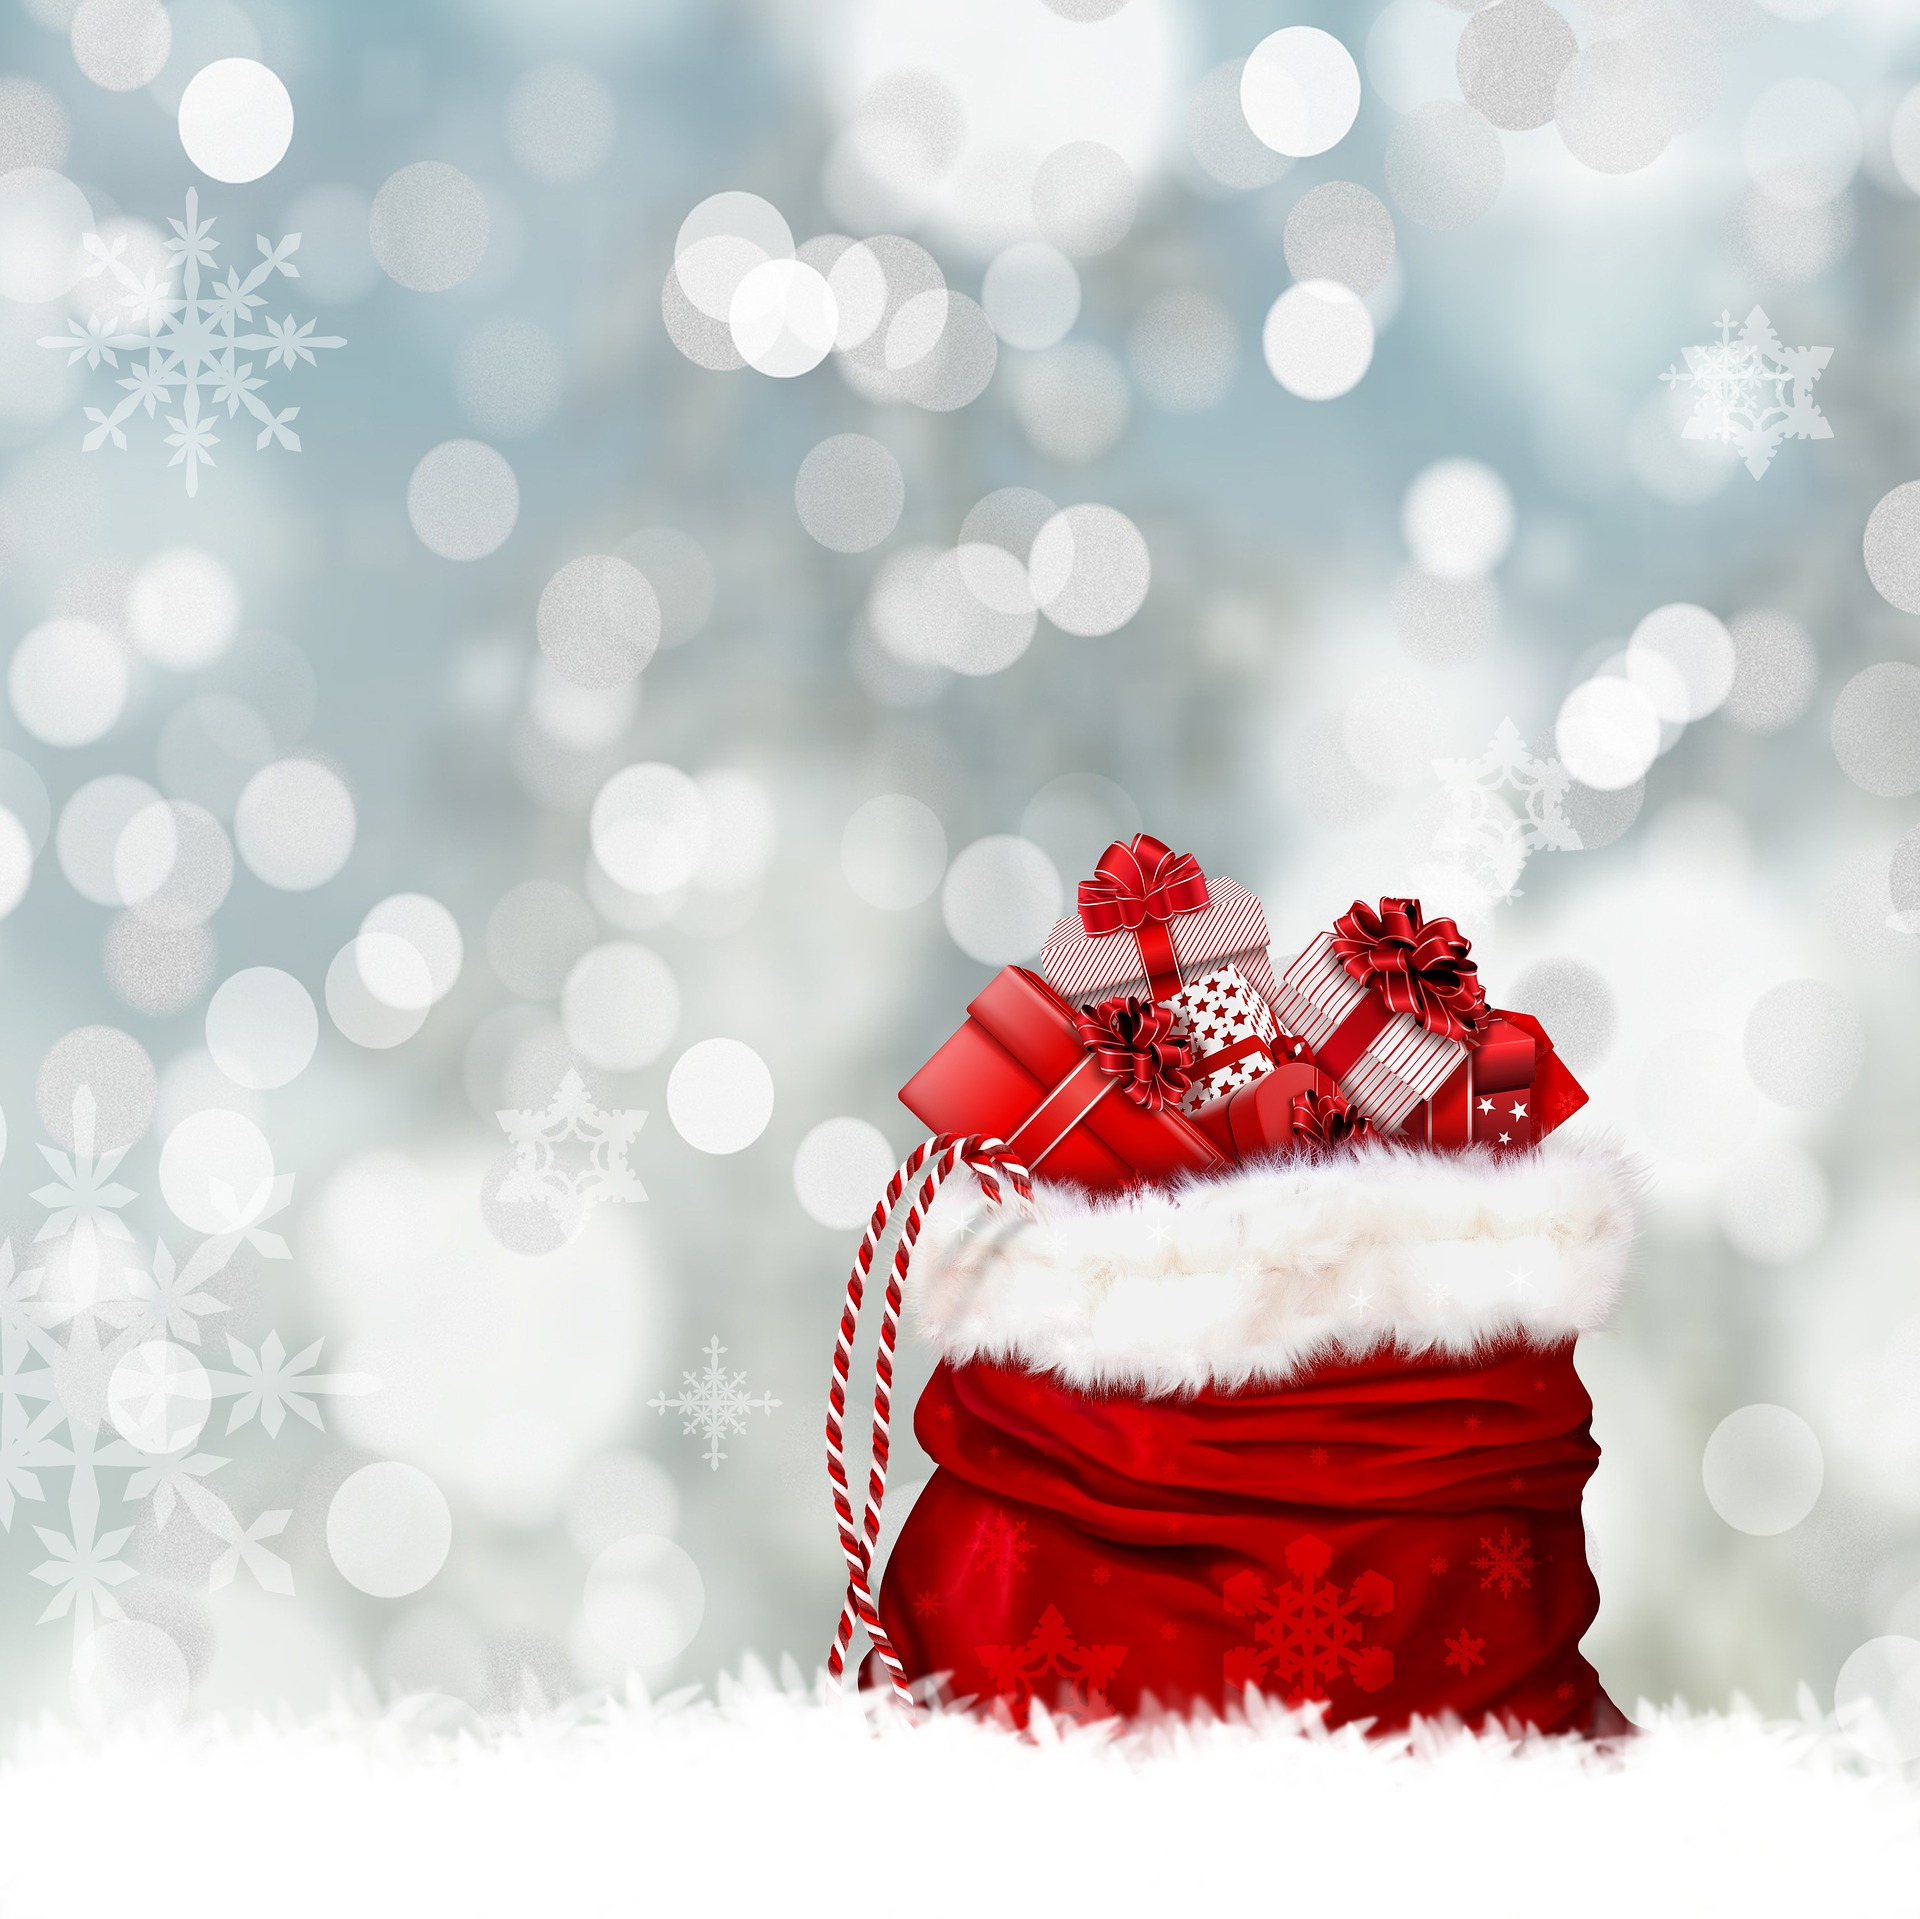 Weihnachtshintergrundbilder Zum Herunterladen für Weihnachtsbilder Gratis Vorlagen